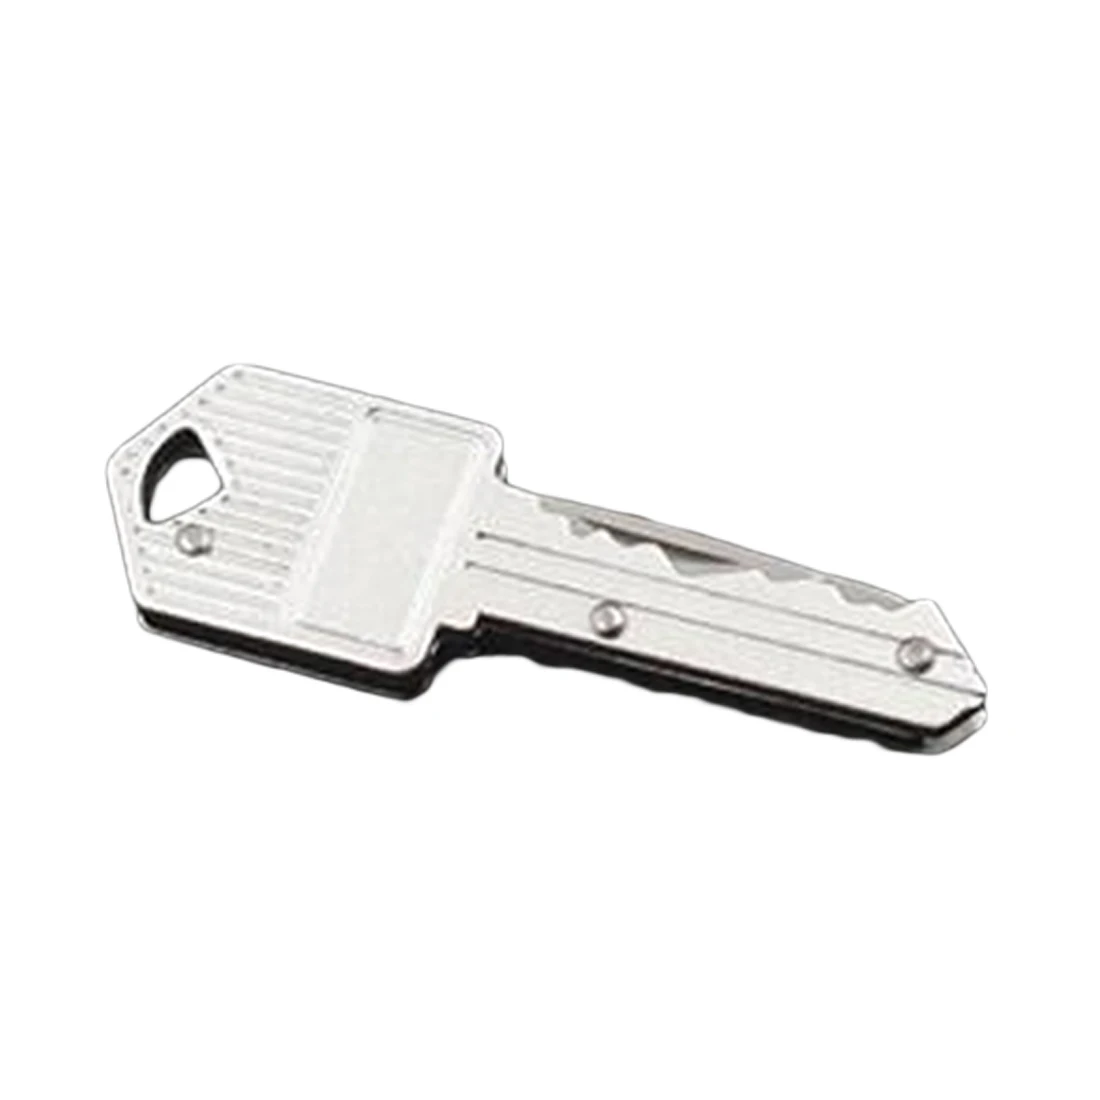 Портативный Кемпинг Открытый выживания карманный складной ключ Форма кольцо нож инструмент нож мини брелок для кемпинга нож инструмент